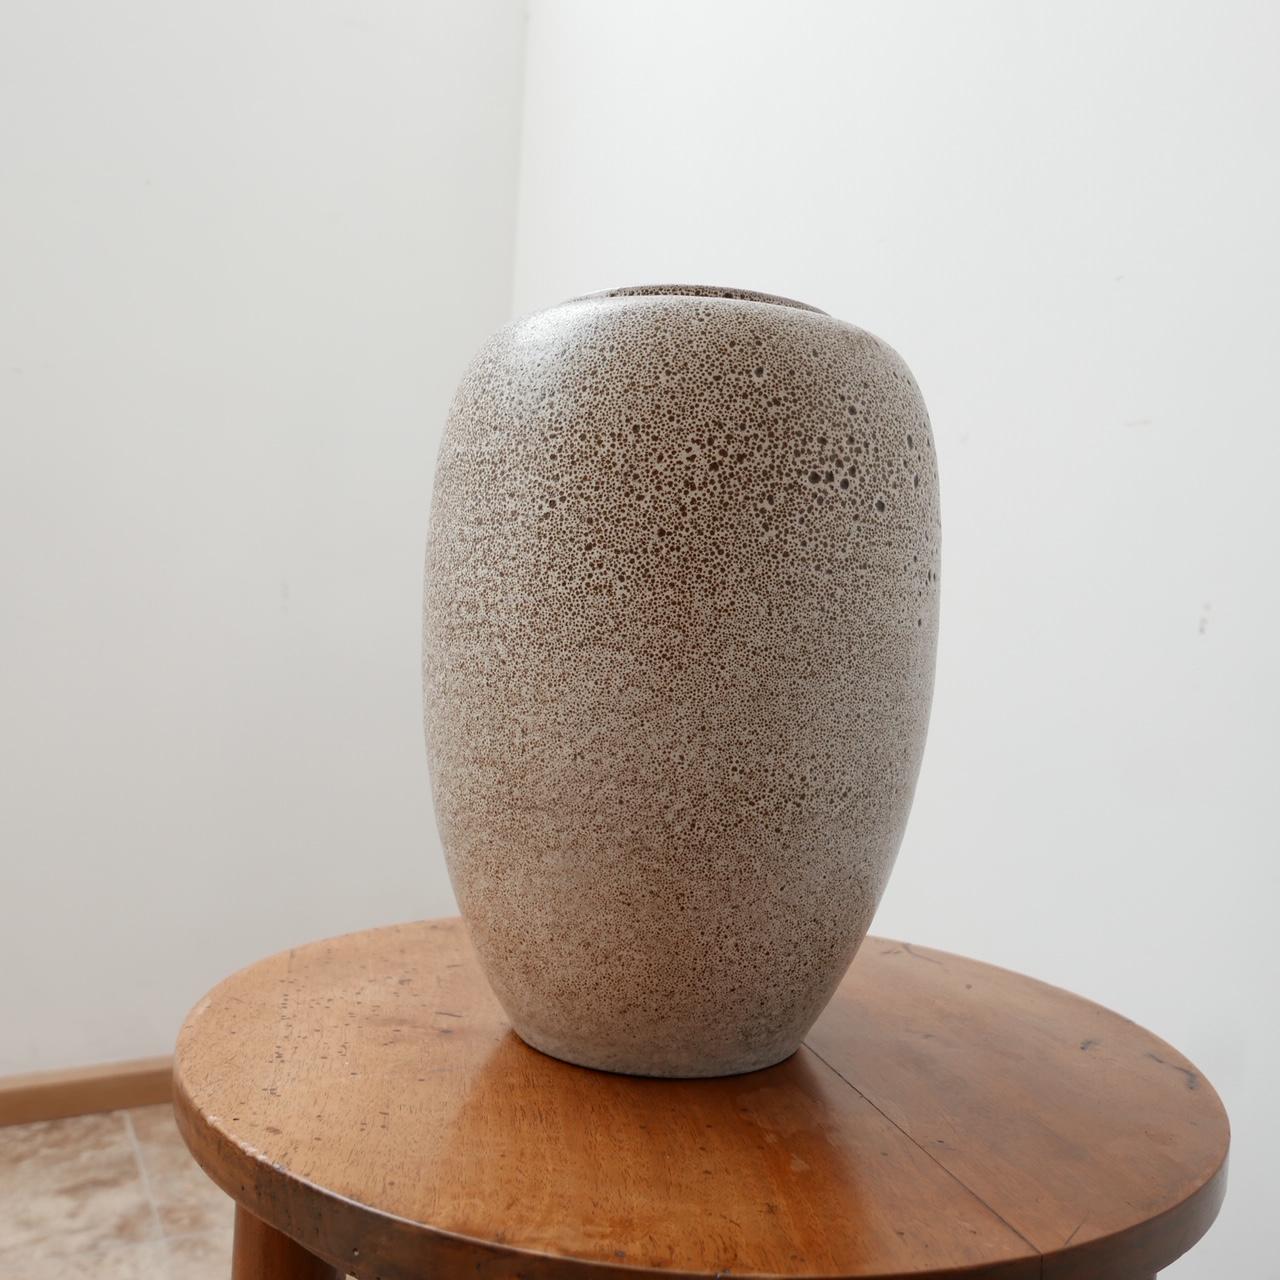 An elegant mid-century vase. 

Ceramic. 

Belgium, c1970s. 

Good condition. 

Dimensions: 31.5 height x 23 diameter in cm. The inner rim is 11 cm diameter. 

Delivery: POA.

